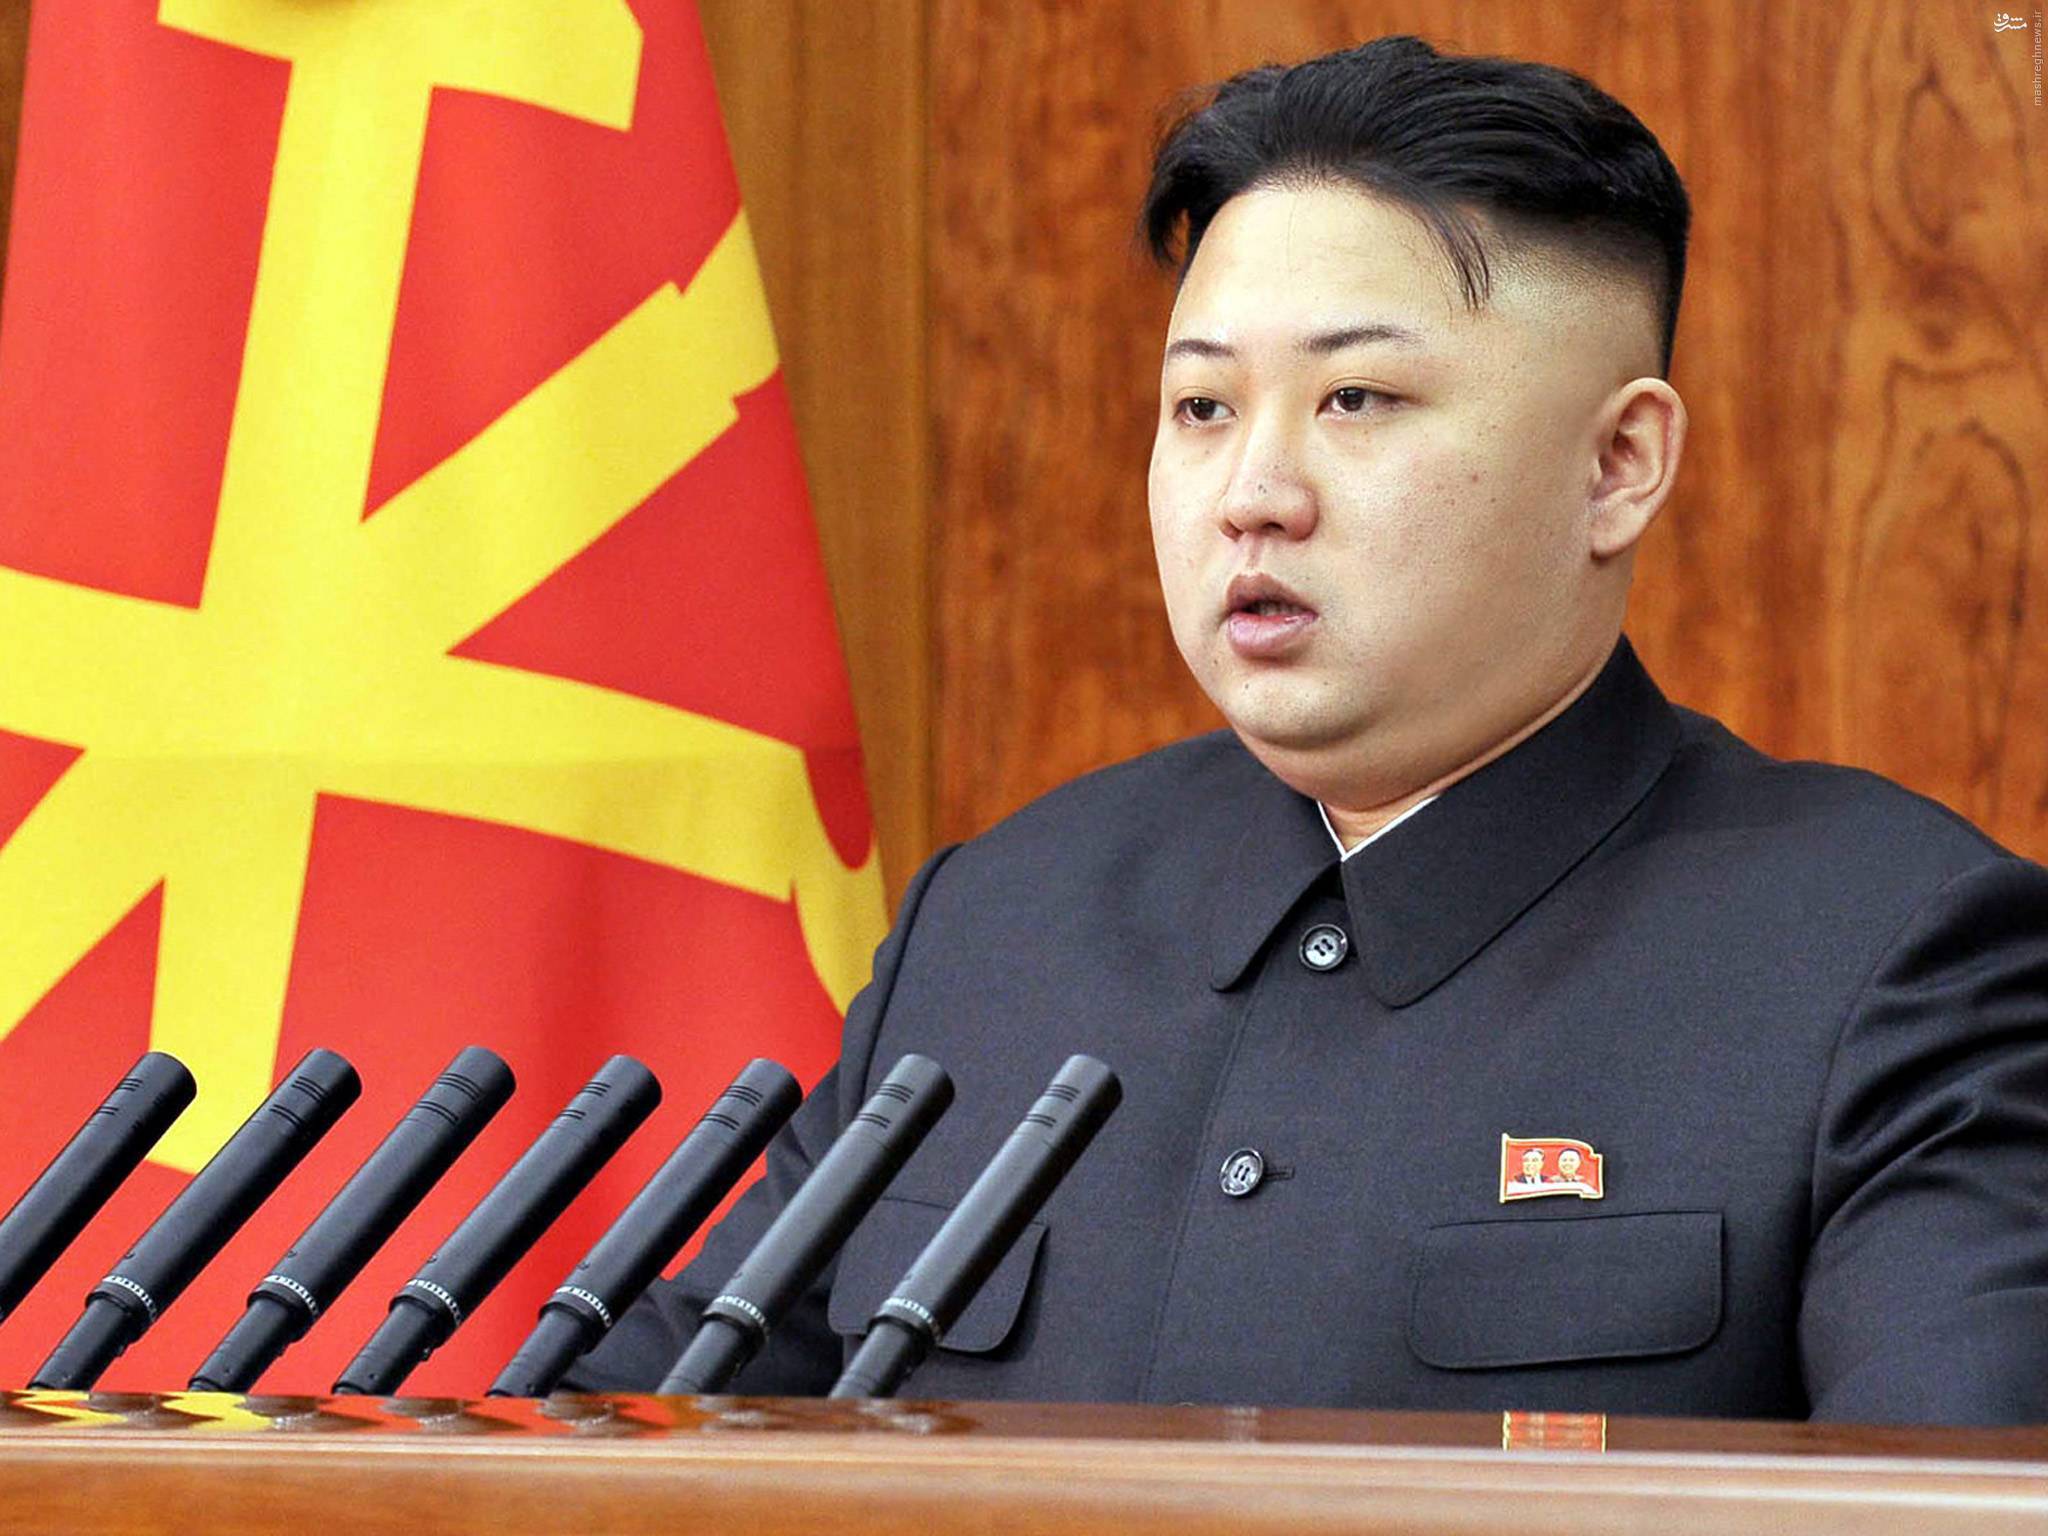 سرآشپز راز عجیب رهبر کره شمالی را فاش کرد